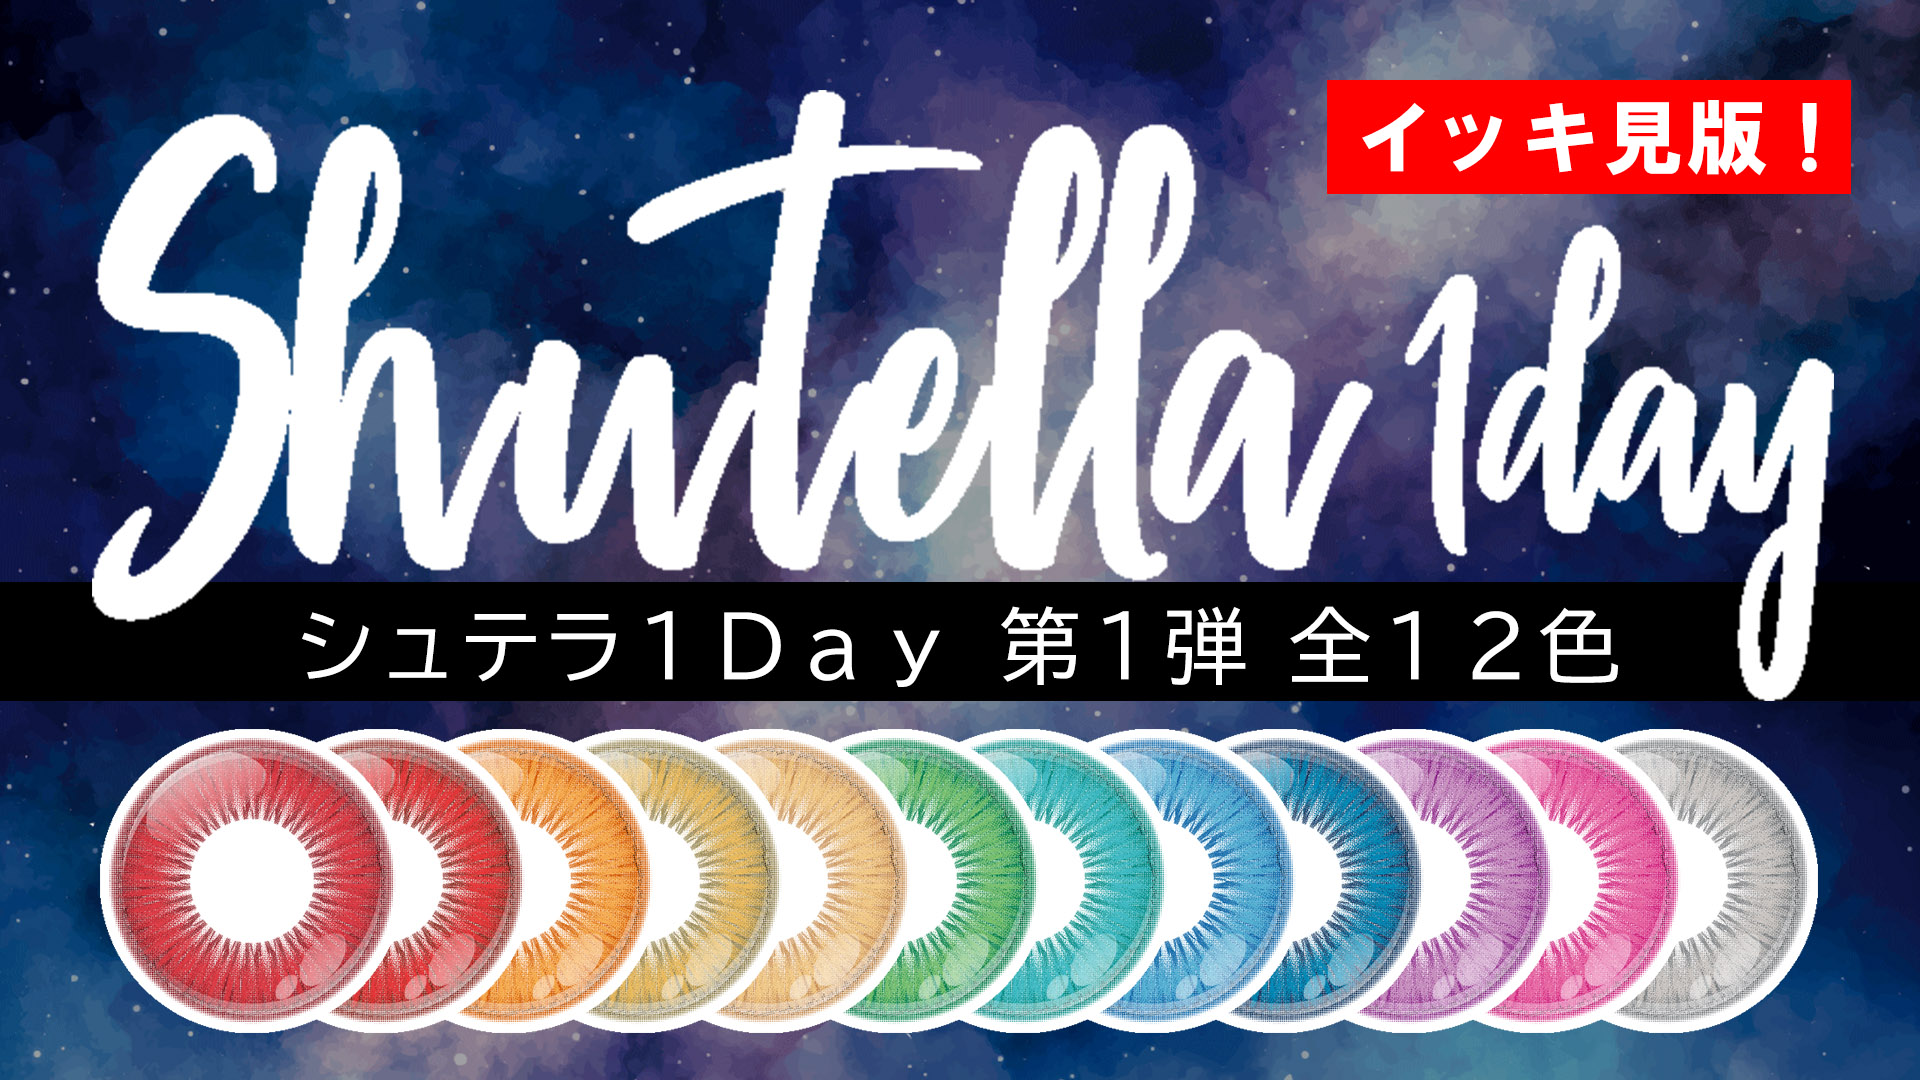 【新作】Shutella(シュテラ) 1Day第1弾 全12色 一気見!【5/27発売!】